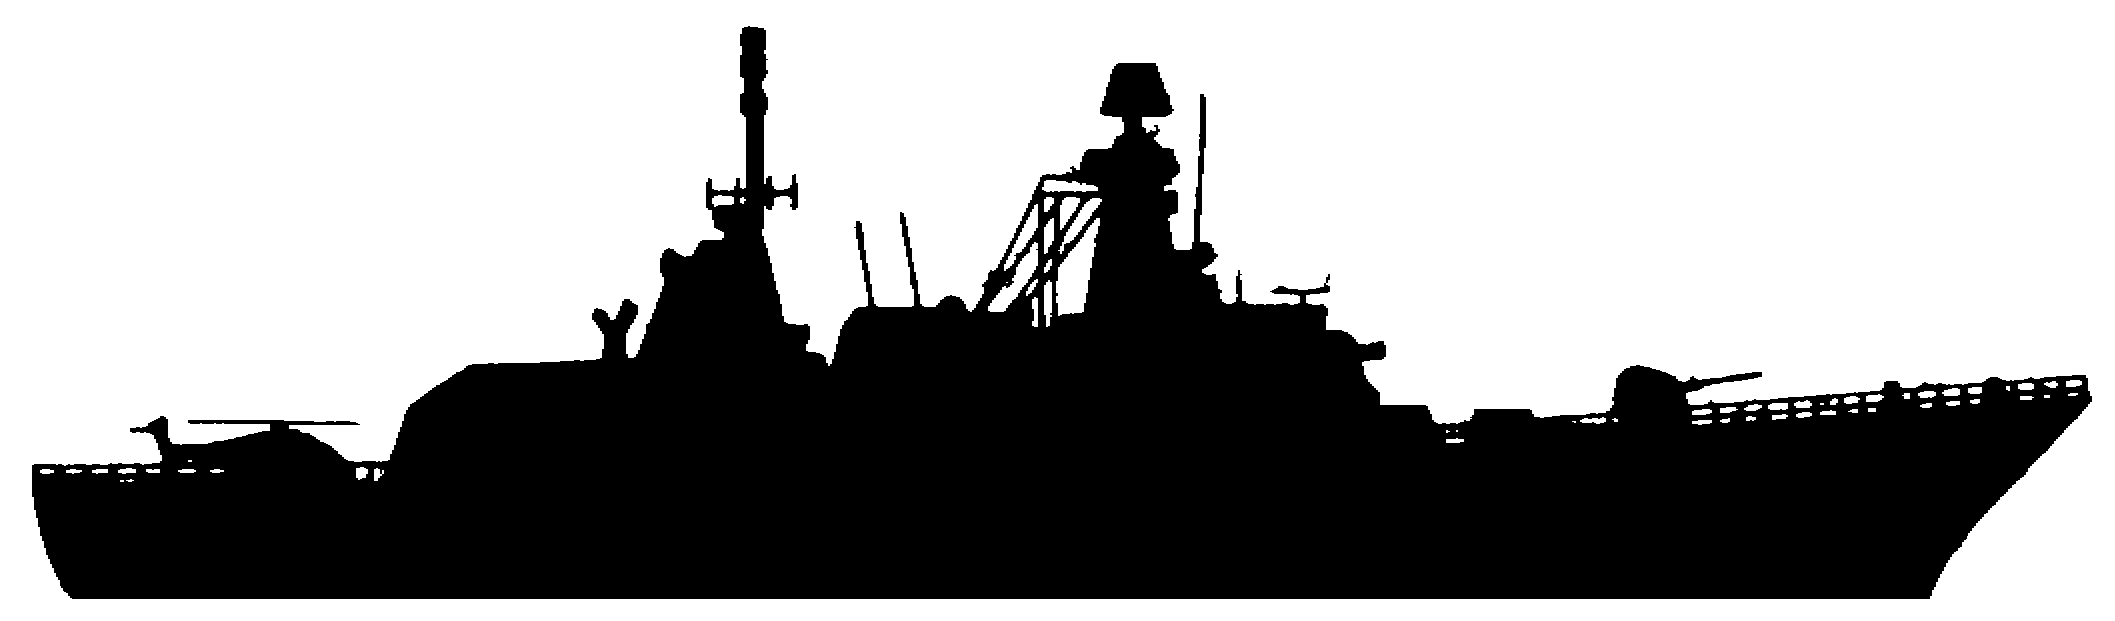 battleship clipart